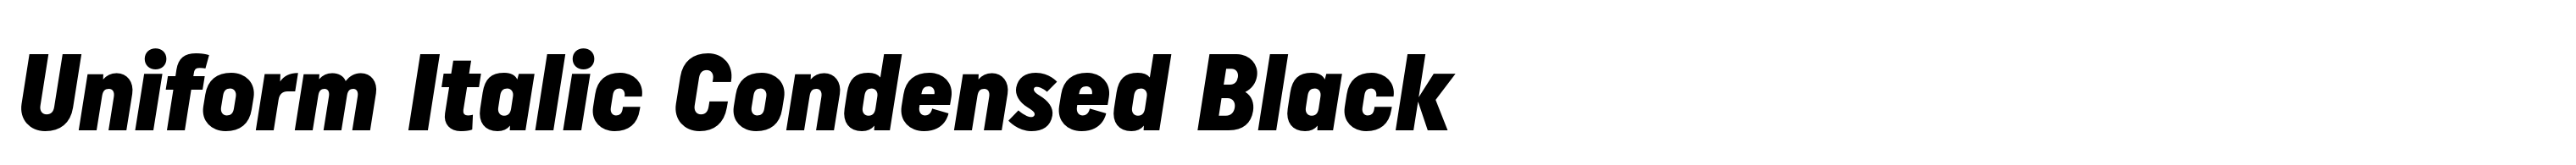 Uniform Italic Condensed Black